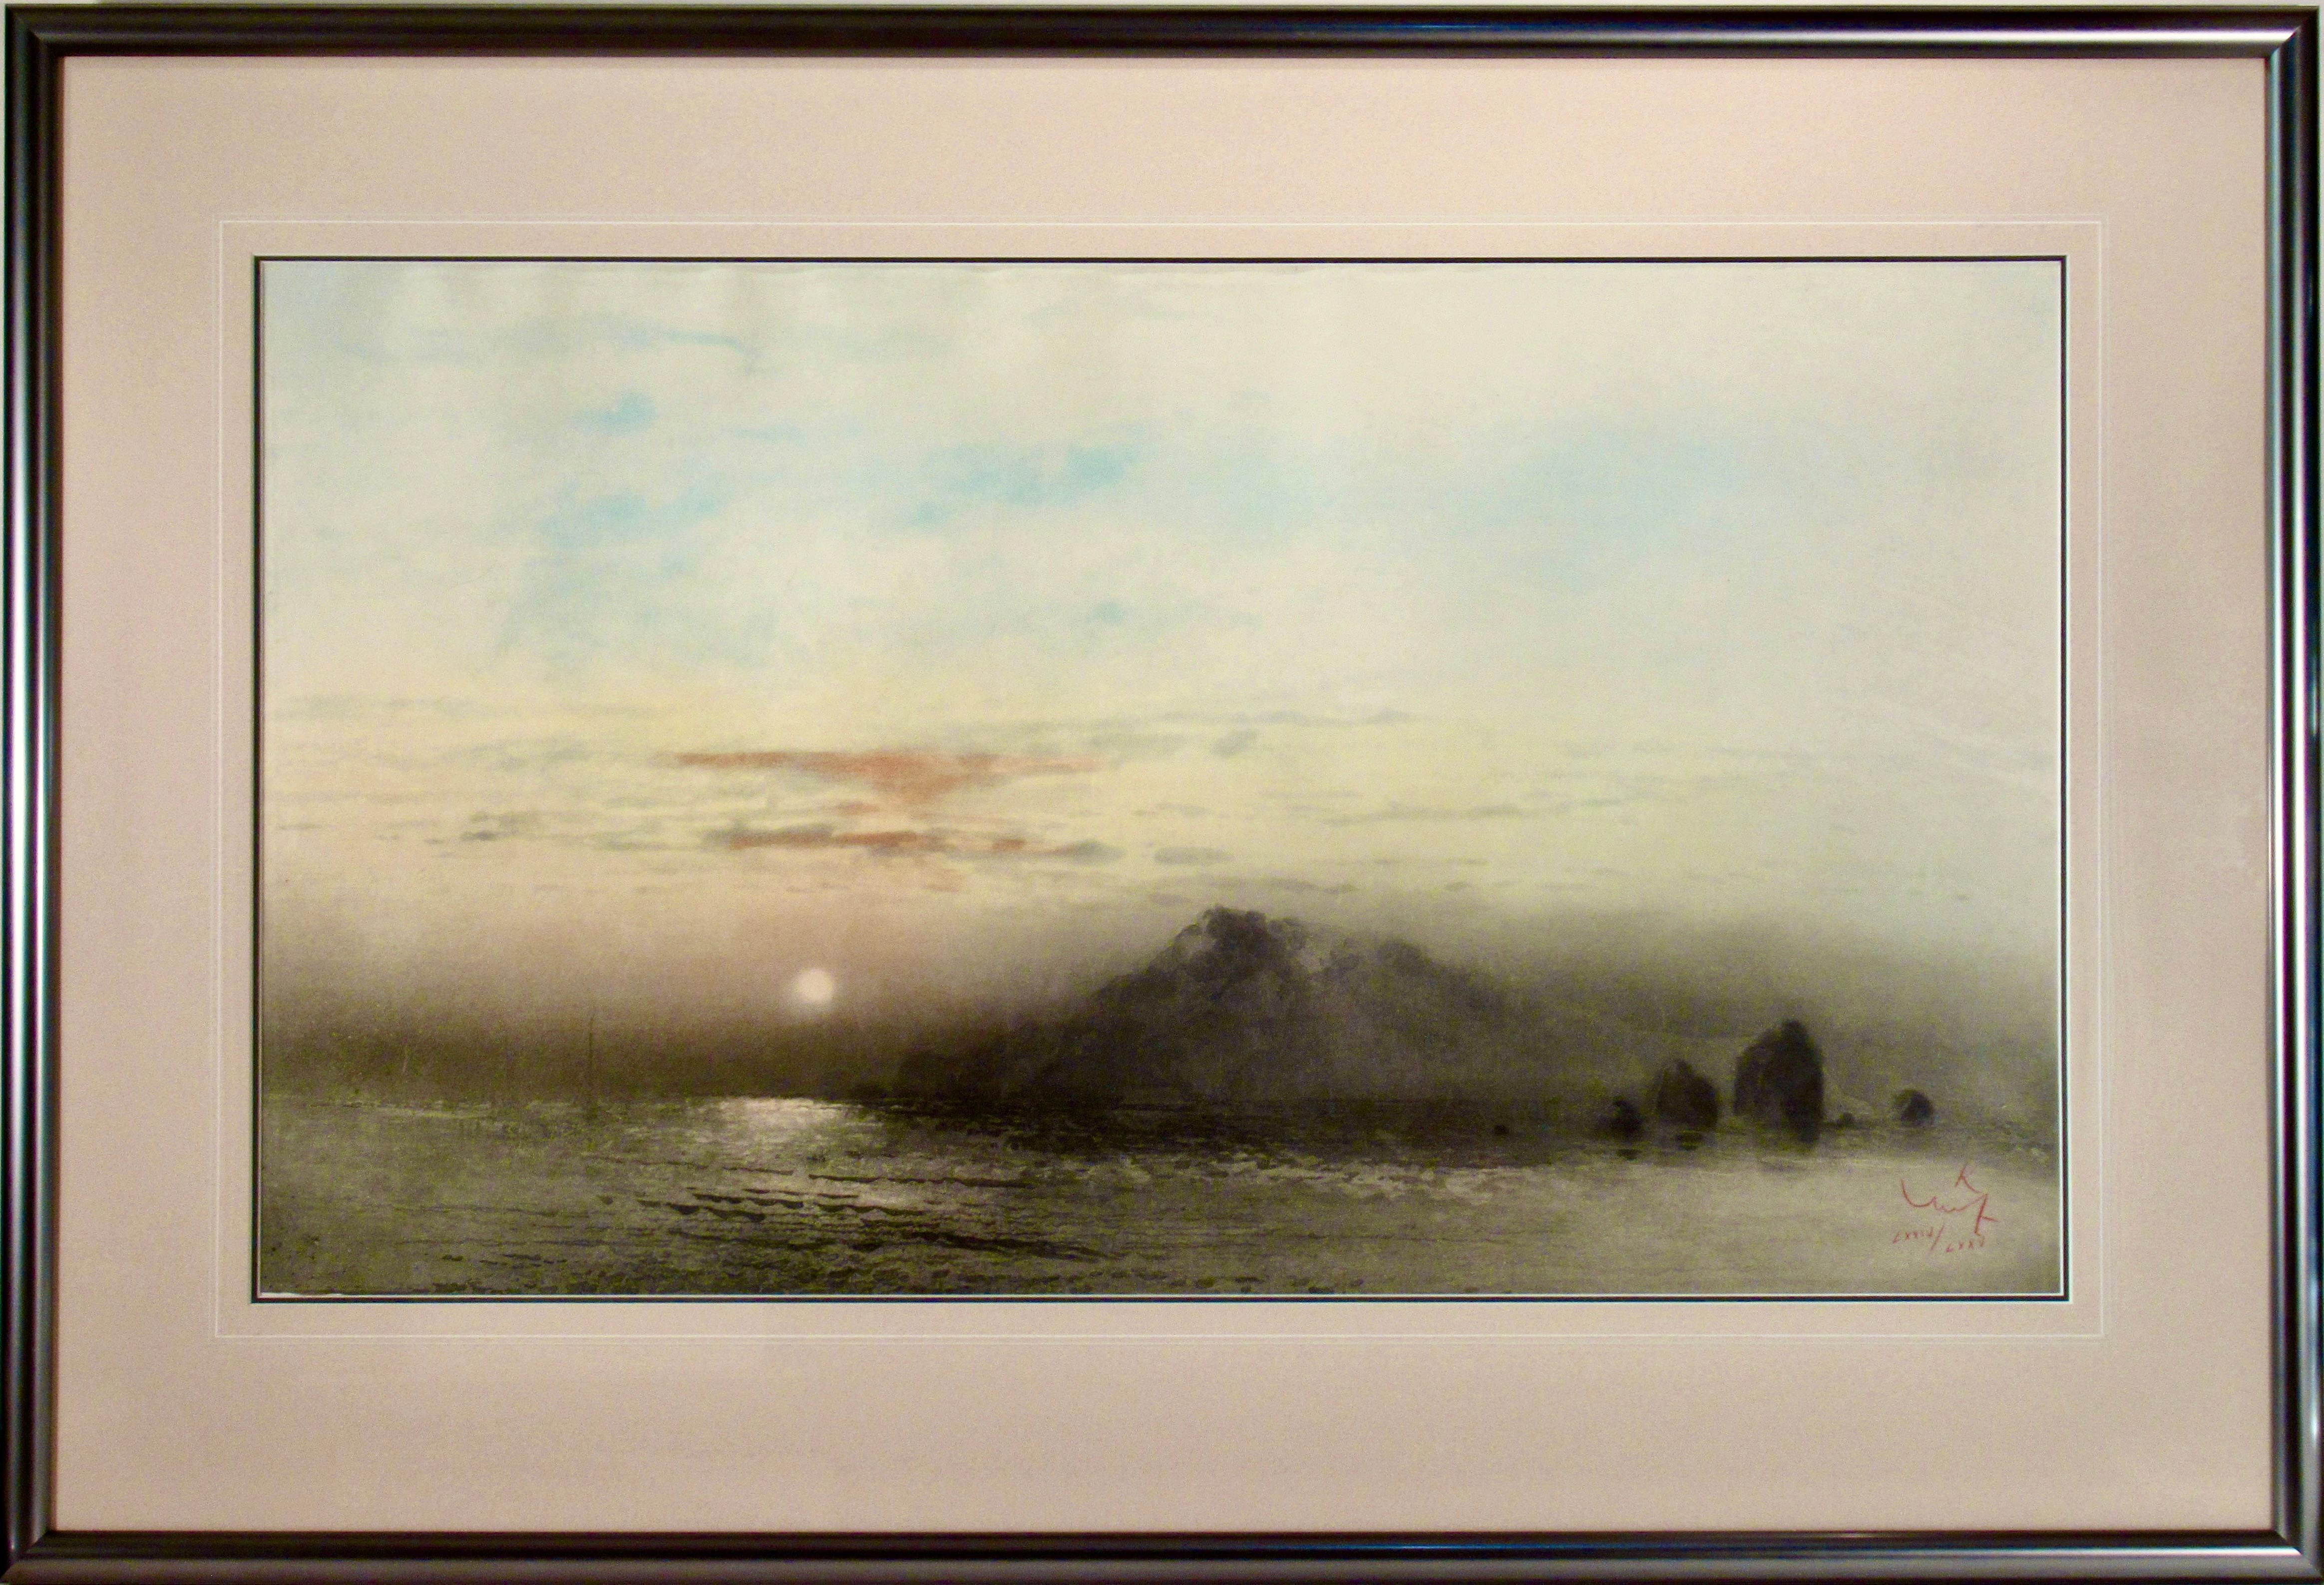 Kaiko Moti Landscape Print - Sunrise